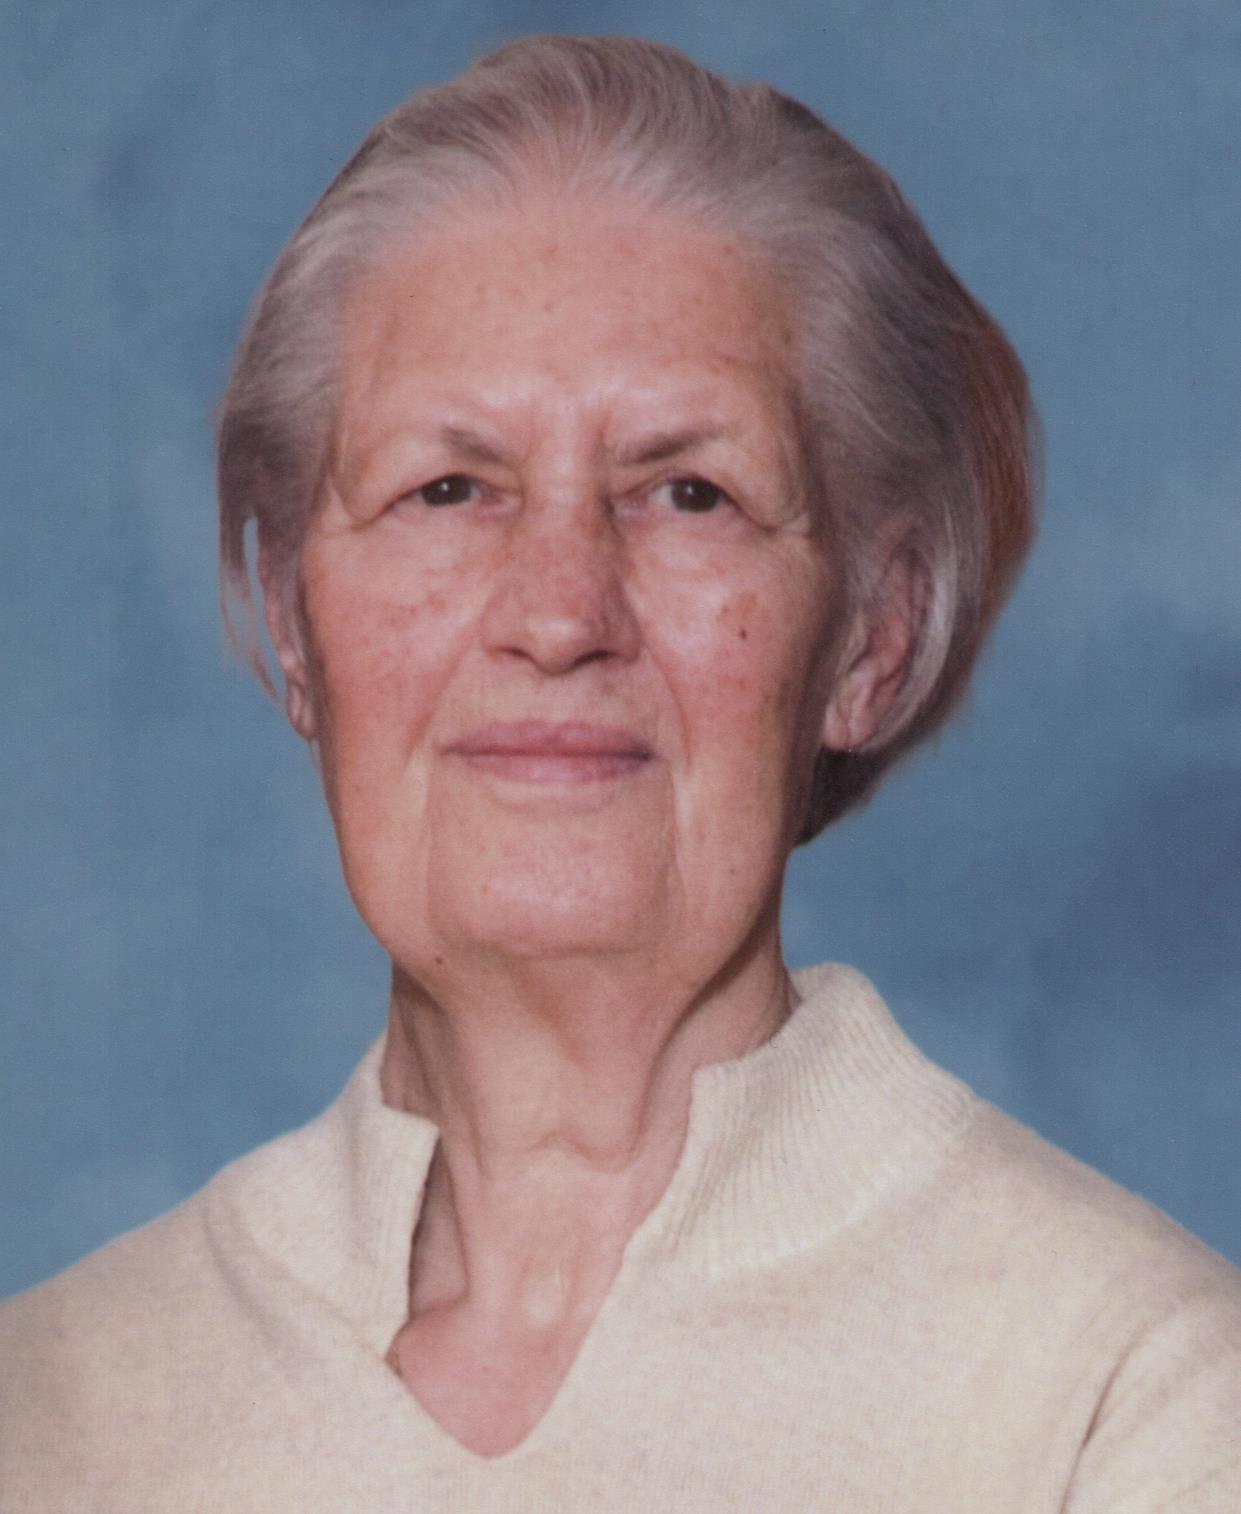 Έφυγε από την ζωή η Μαρία Τάση σε ηλικία 87 ετών – Η κηδεία θα τελεστεί την Τρίτη 7 Νοεμβρίου